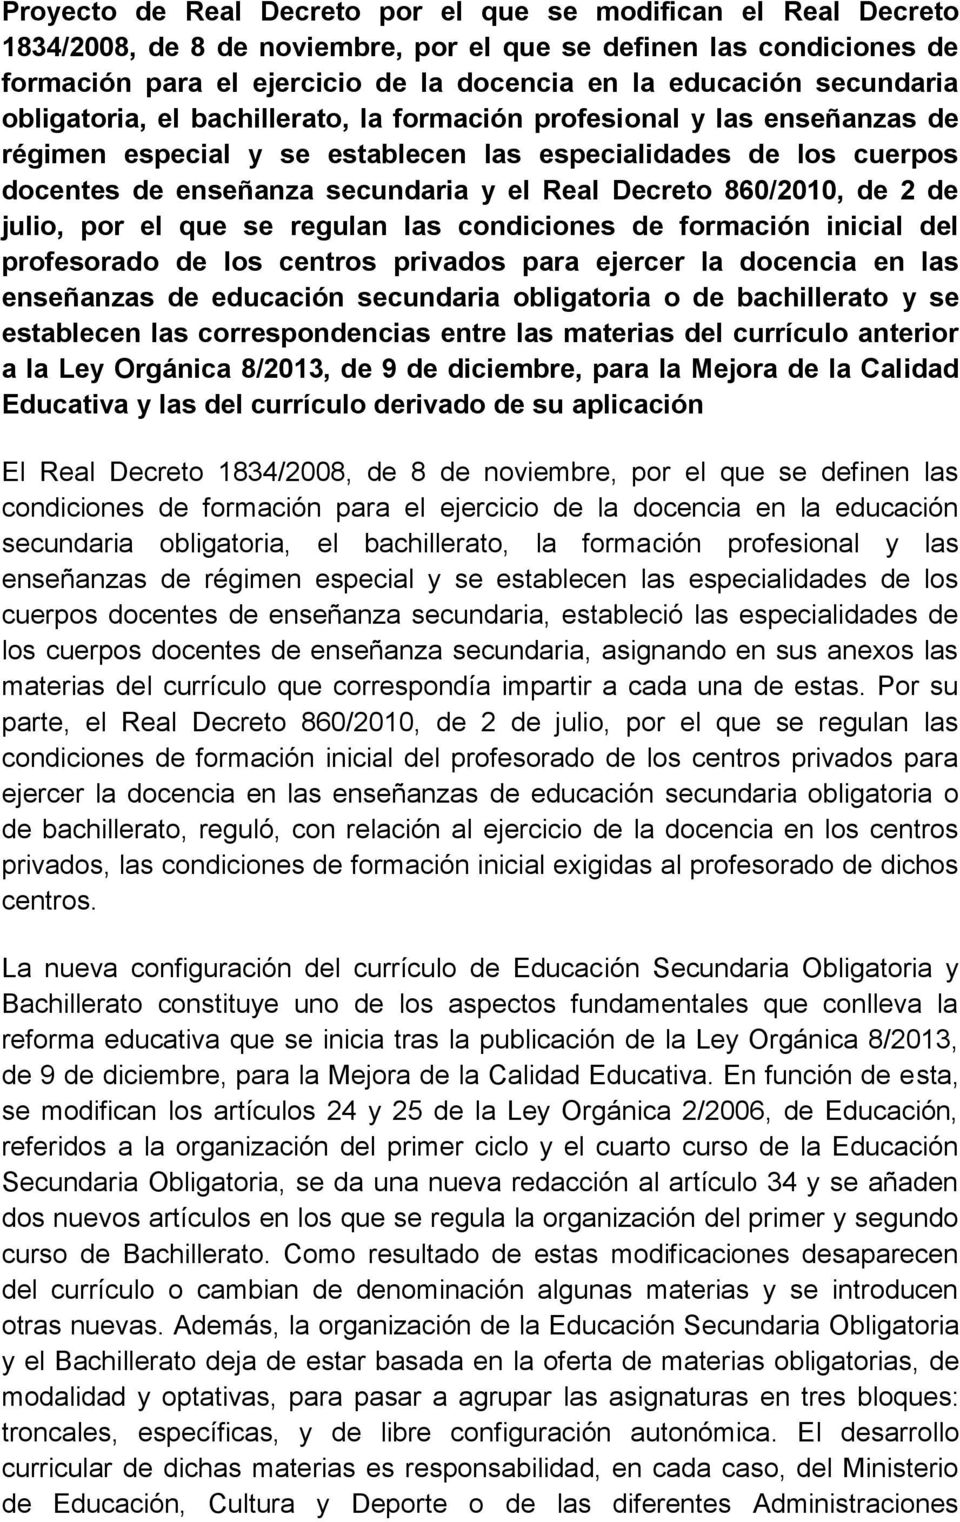 Decreto 860/2010, de 2 de julio, por el que se regulan las condiciones de formación inicial del profesorado de los centros privados para ejercer la docencia en las enseñanzas de educación secundaria